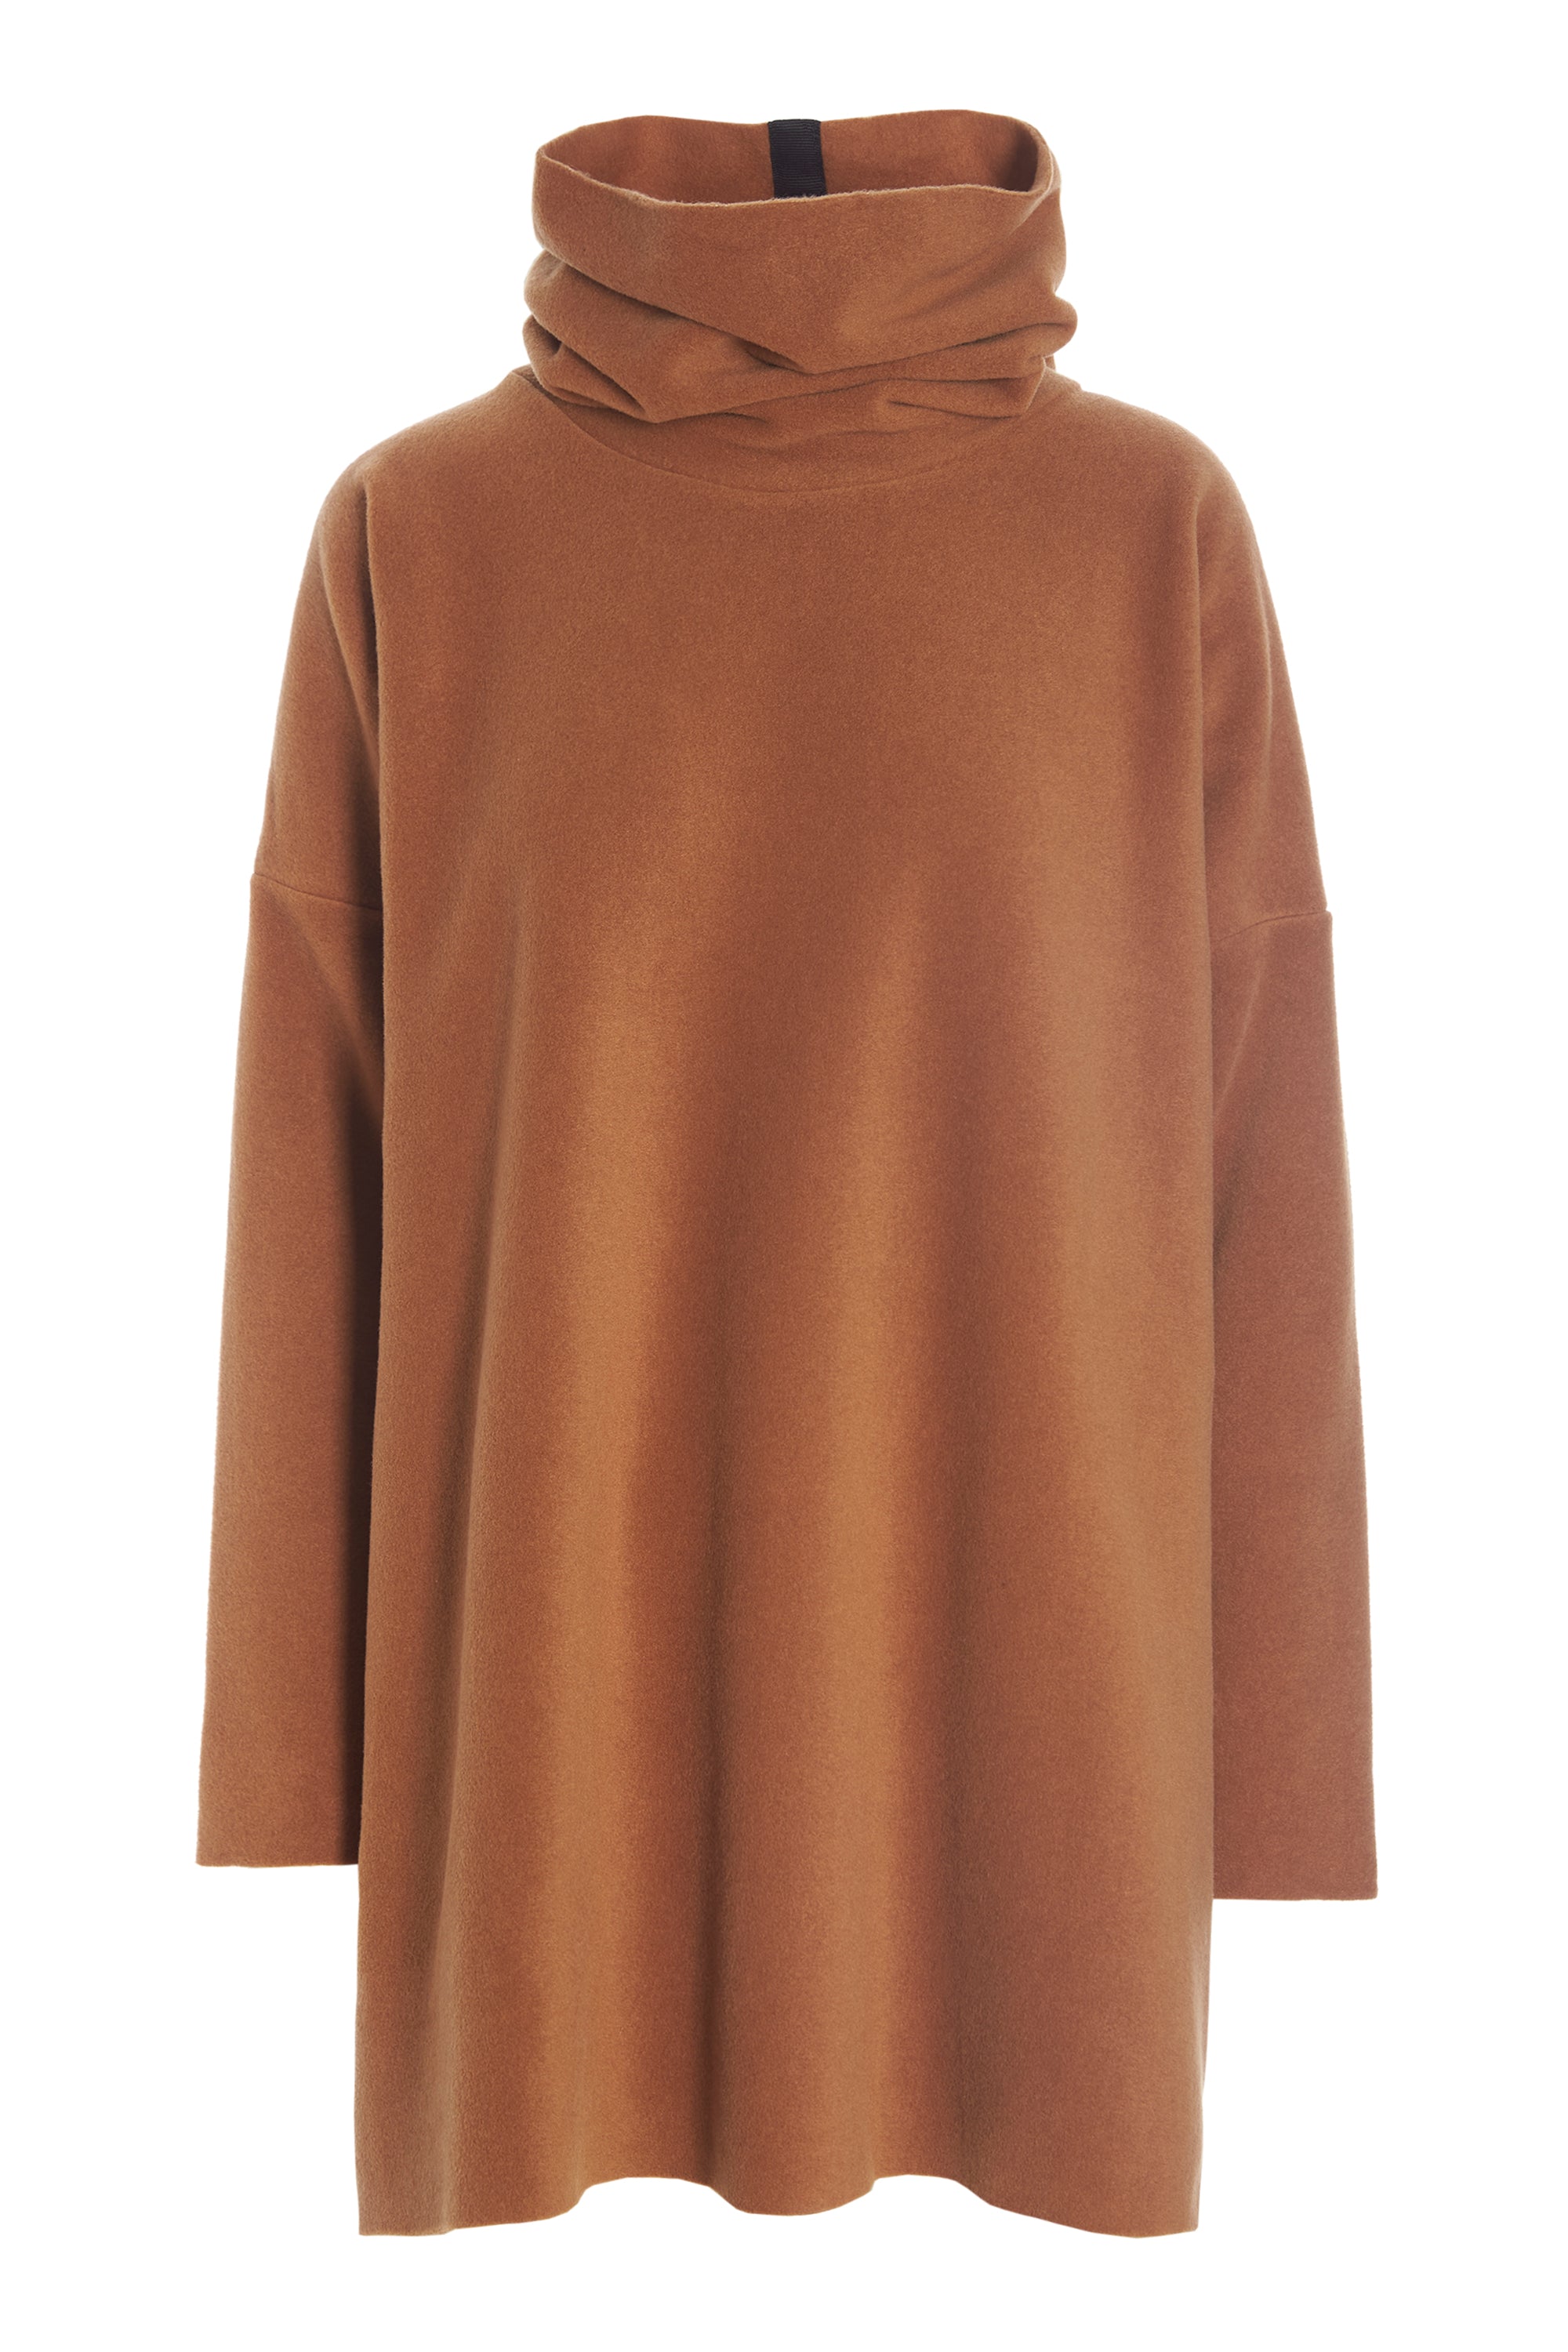 HENRIETTE STEFFENSEN Copenhagen Fleece Tunic Brown Lagenlook XL